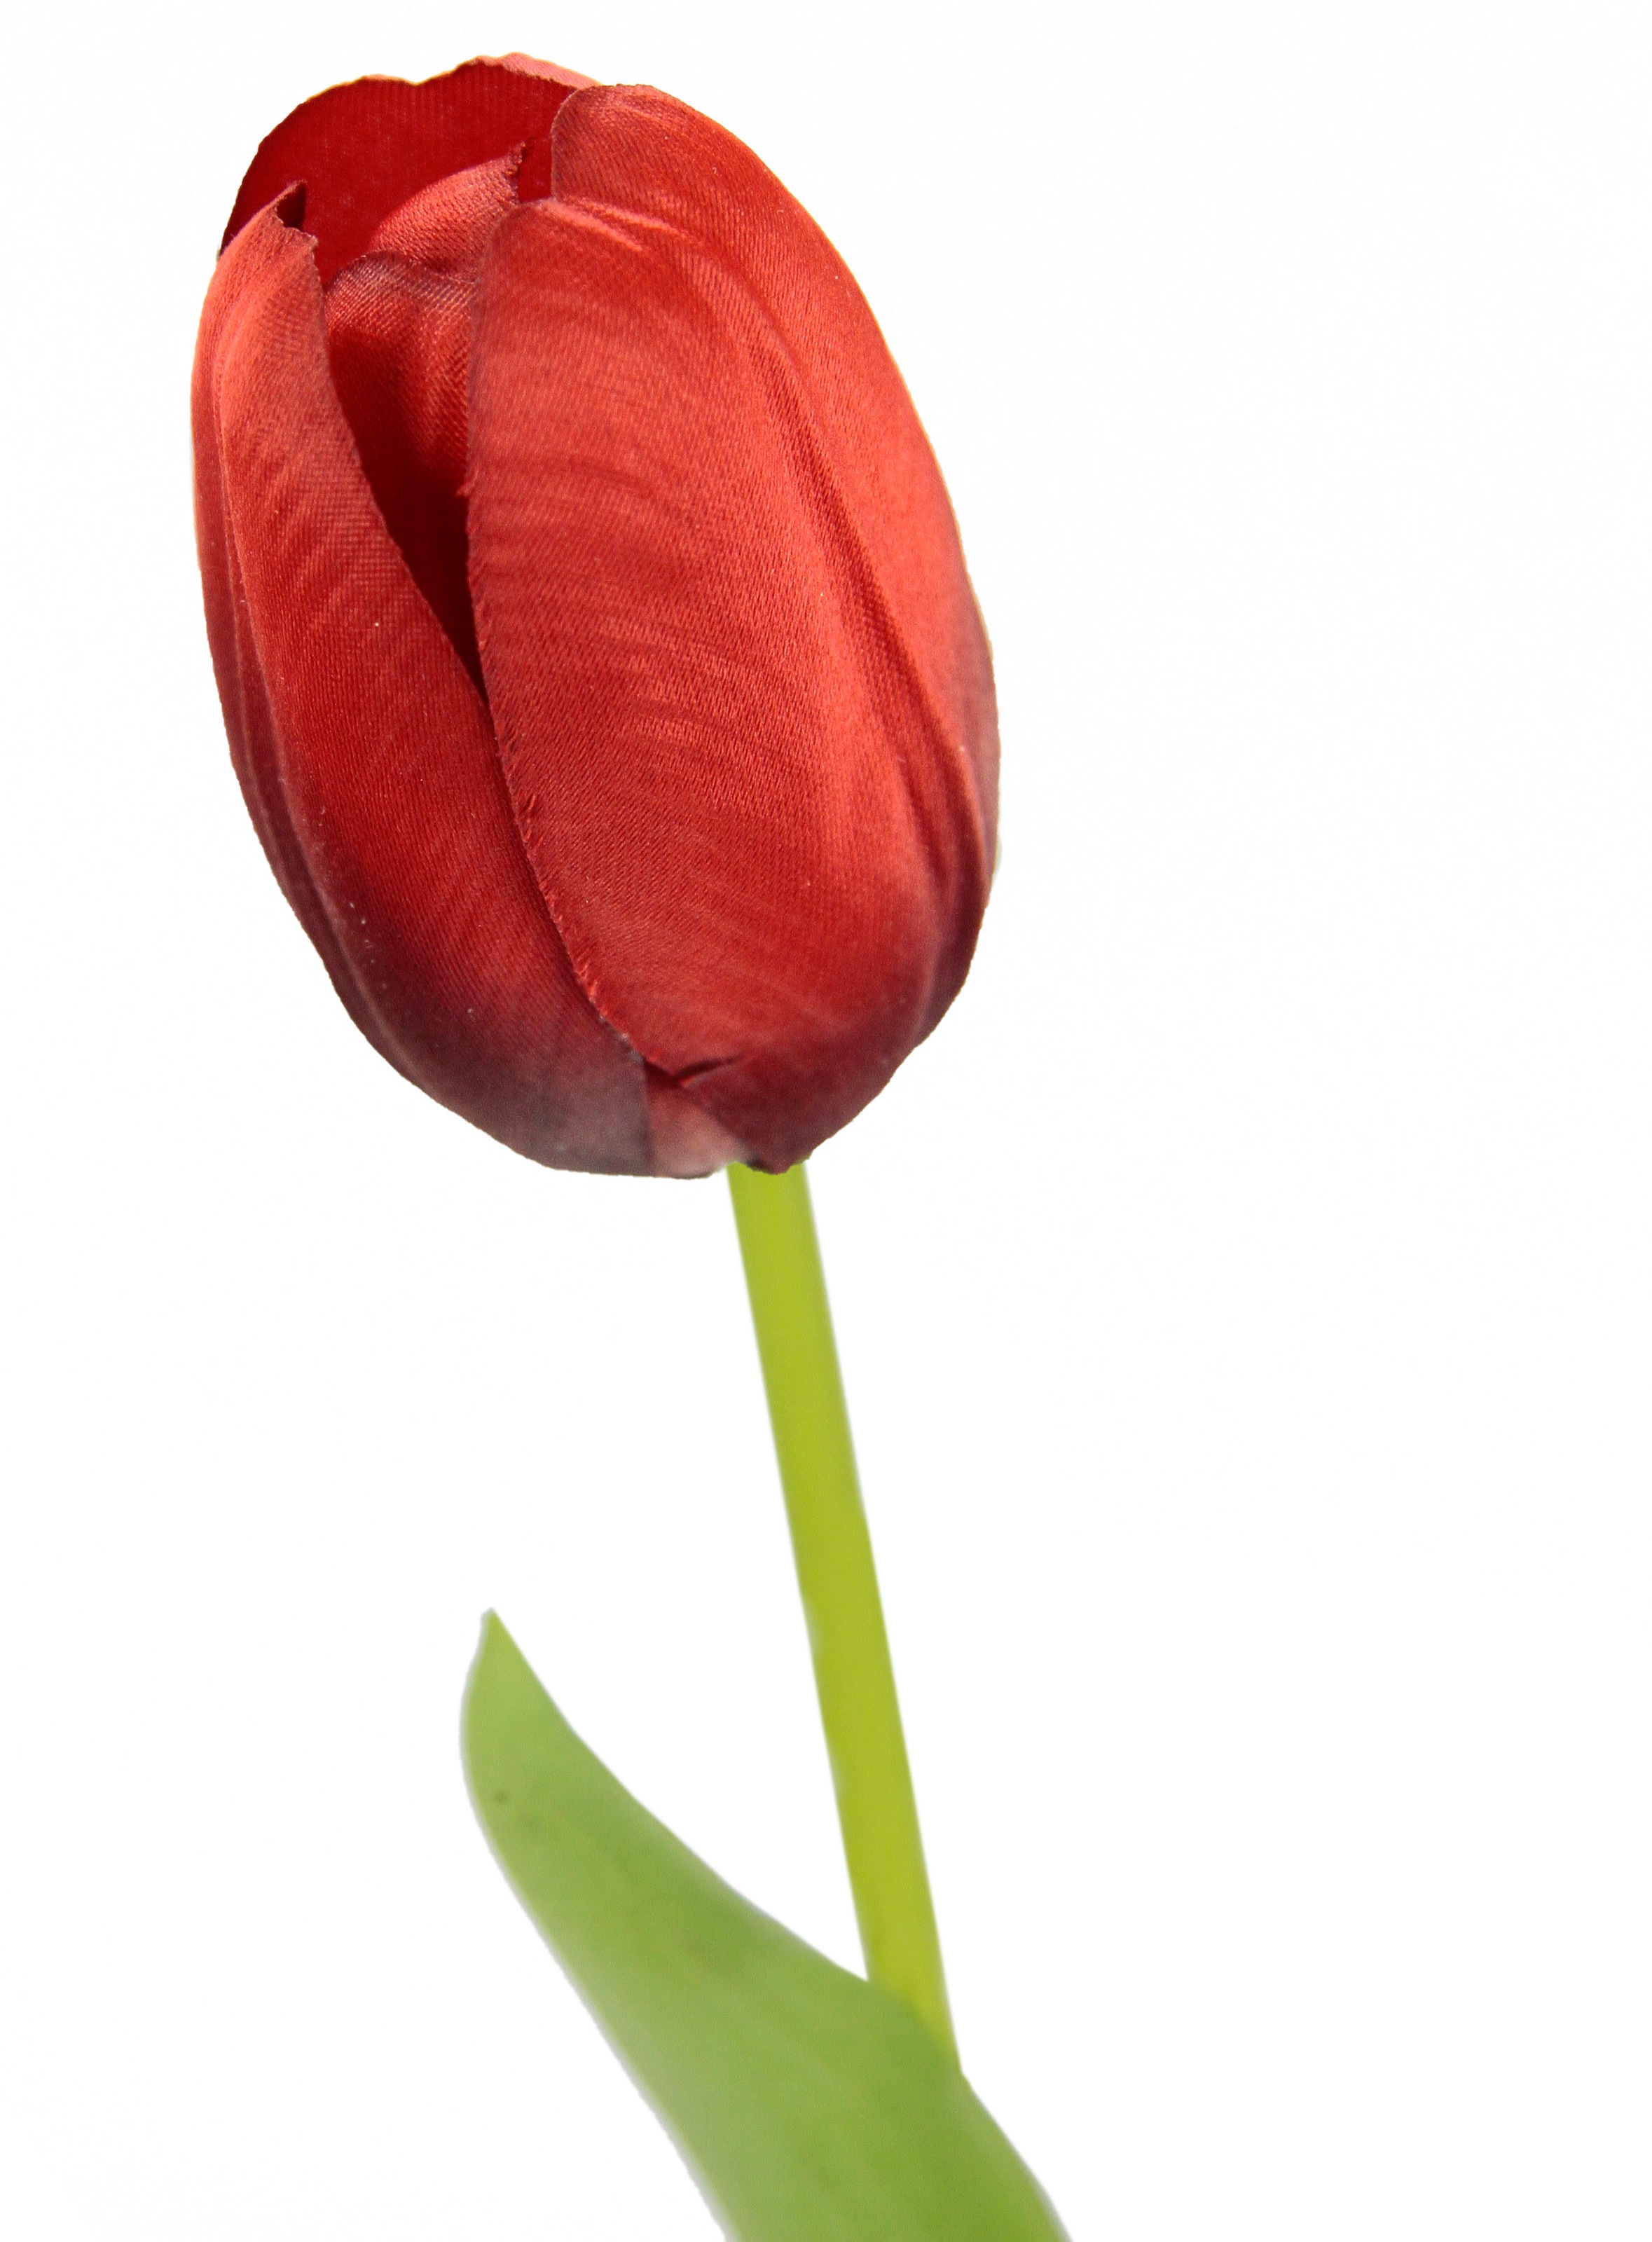 Stielblume kaufen Raten Kunstblumen, auf »Real Kunstblume Tulpen«, Set Tulpenknospen, 5er künstliche I.GE.A. Touch